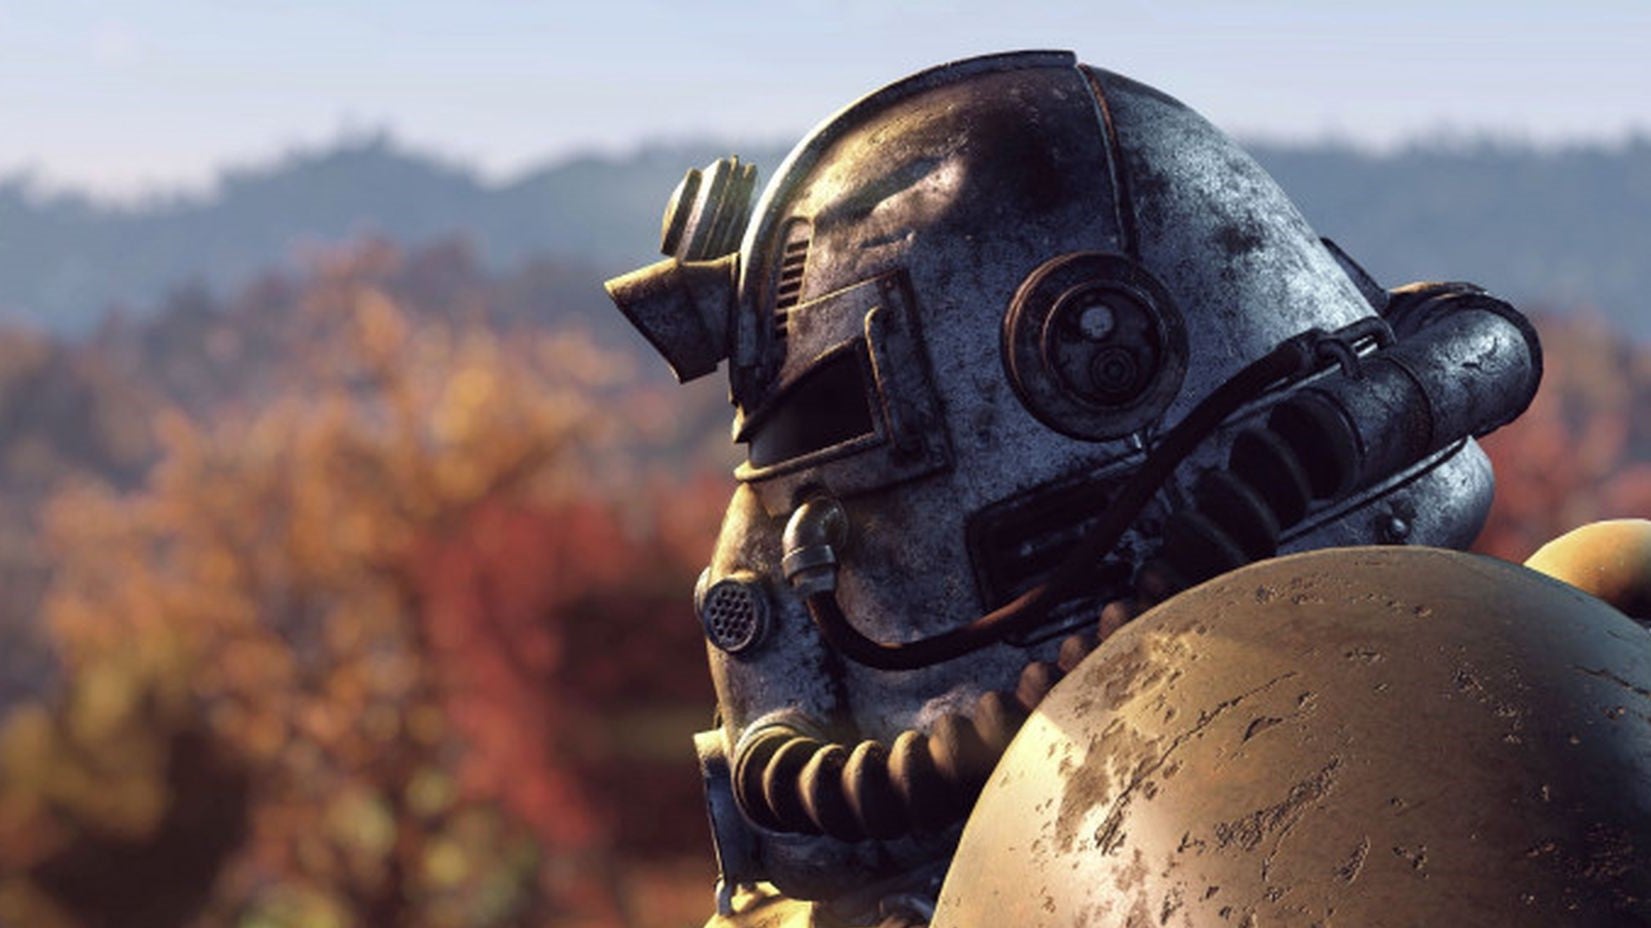 Fallout-Weitere-Schauspieler-f-r-Amazons-Serie-best-tigt-darunter-Kyle-MacLachlan